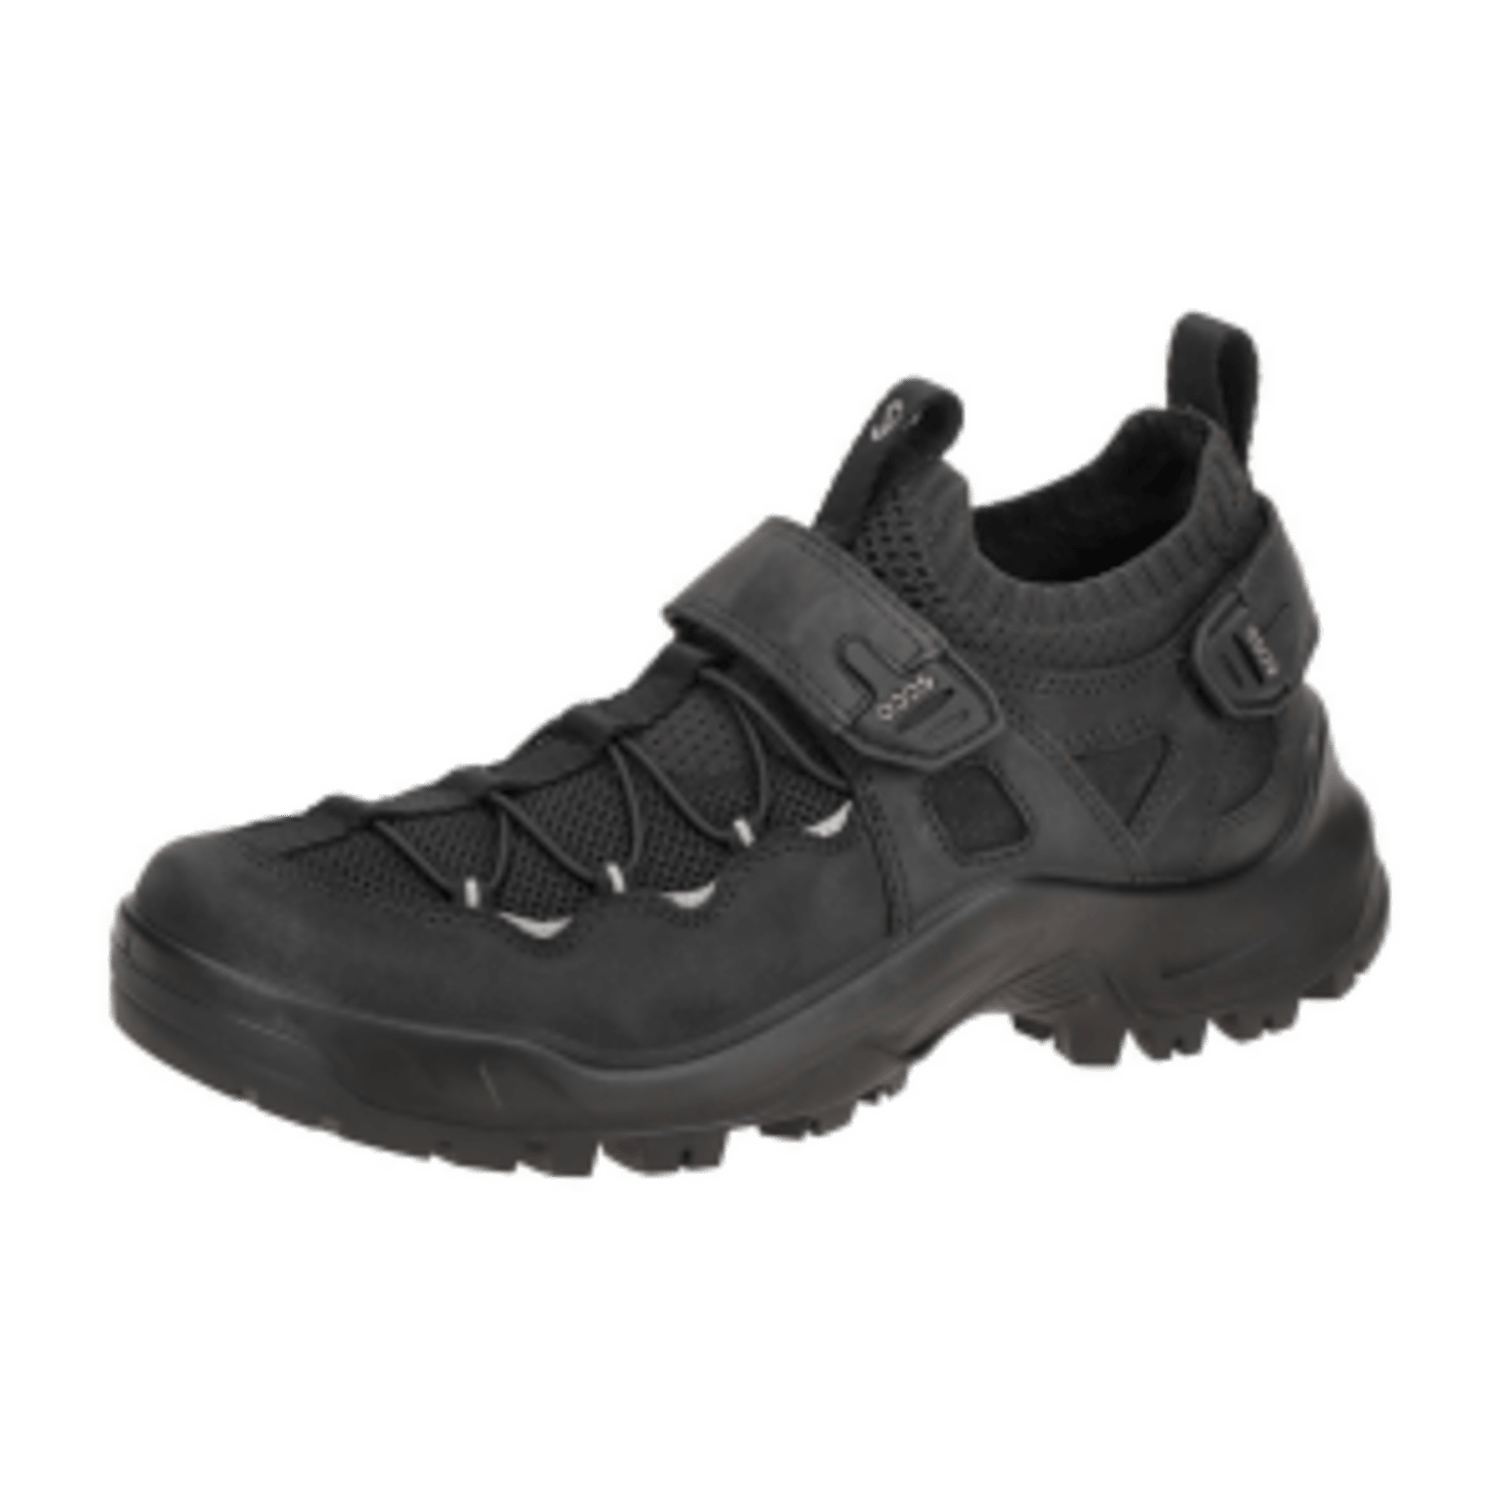 Ecco Offroad Schuhe schwarz Klett 822334